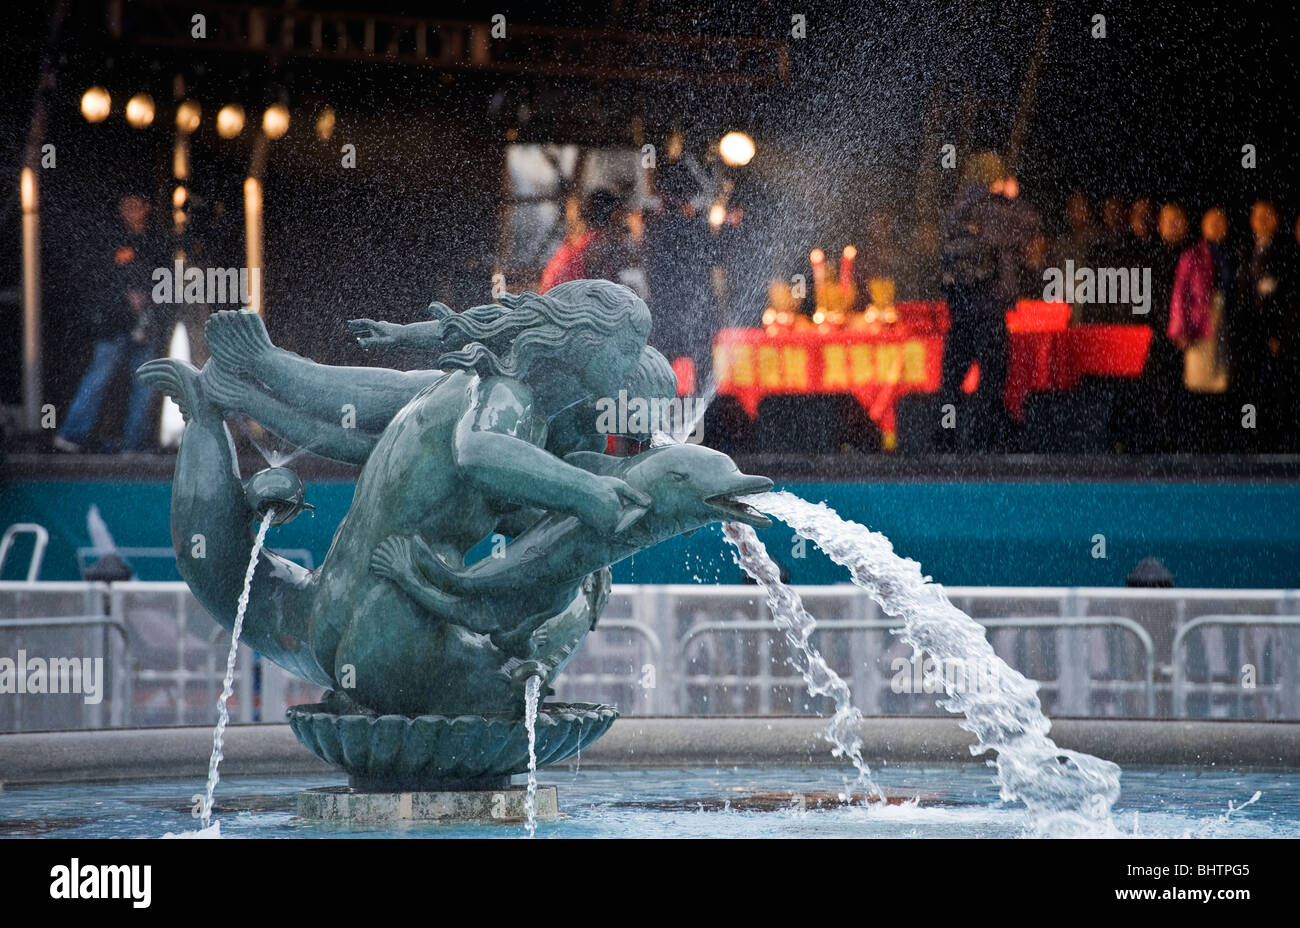 Un escenario detrás de una fuente de Trafalgar Square, las celebraciones del Año Nuevo Chino en Londres, Gran Bretaña. Foto de stock